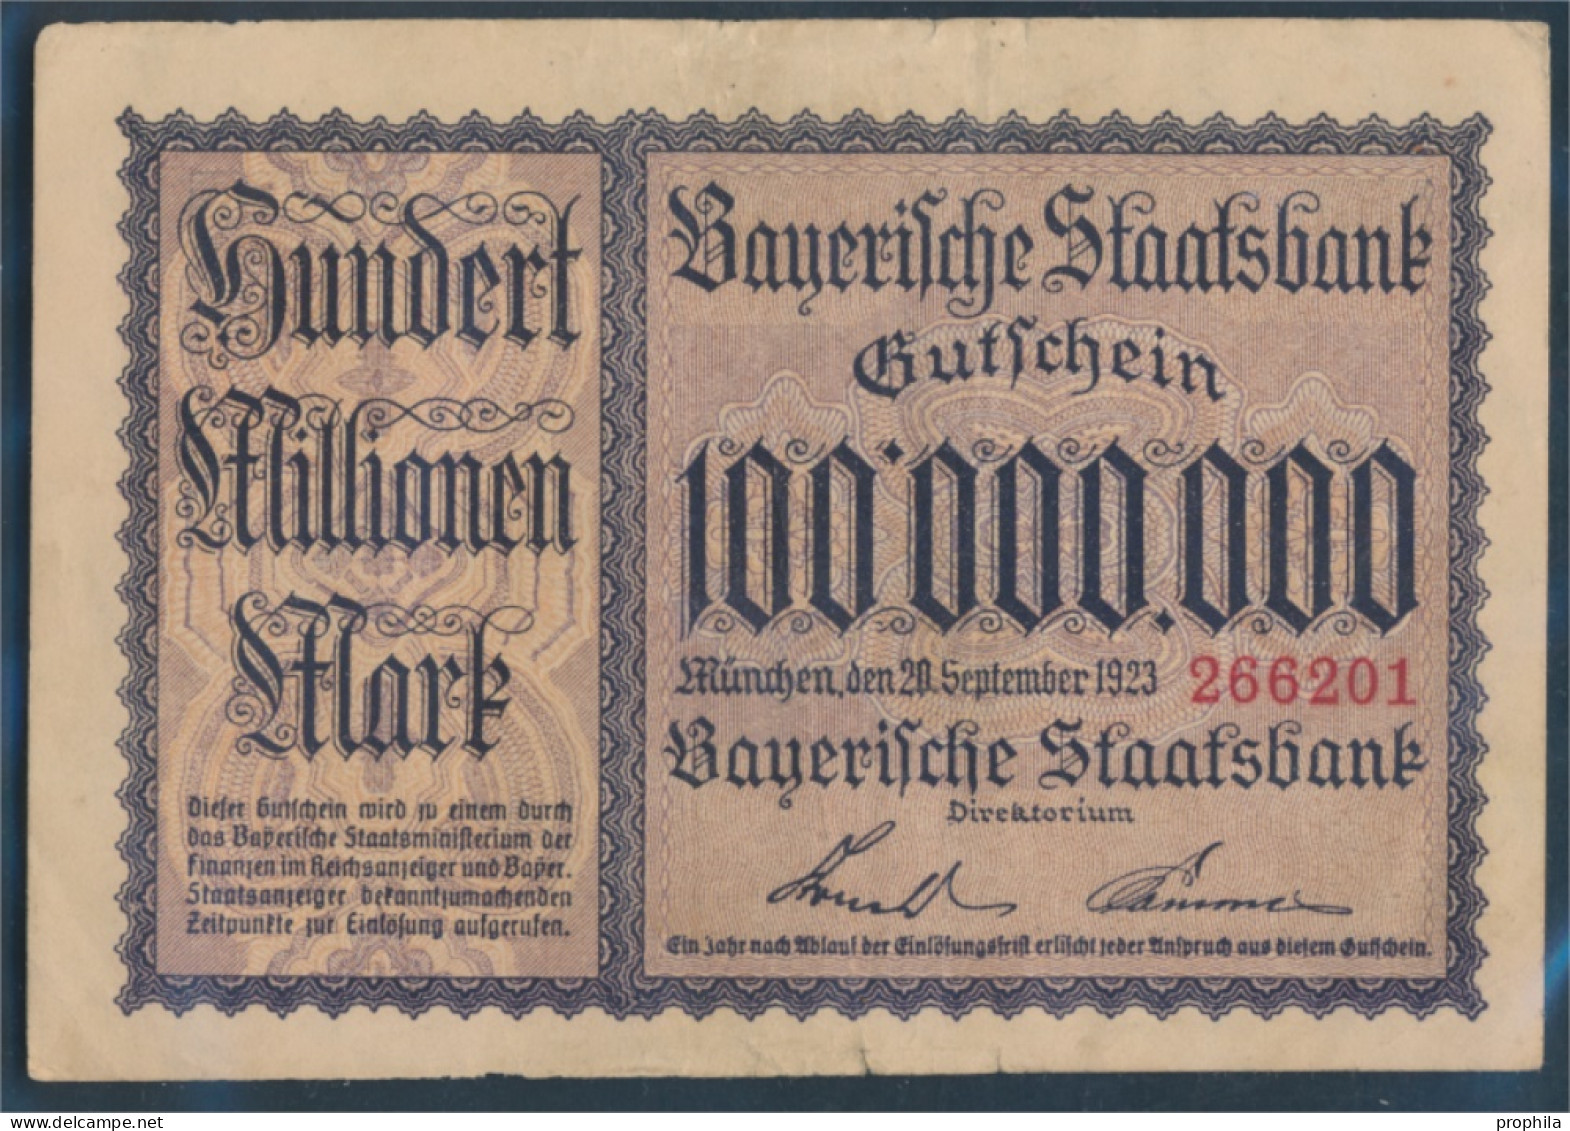 Bayern Inflationsgeld Bayerische Staatsbank Gebraucht (III) 1923 100 Millionen Mark (10288401 - 100 Millionen Mark